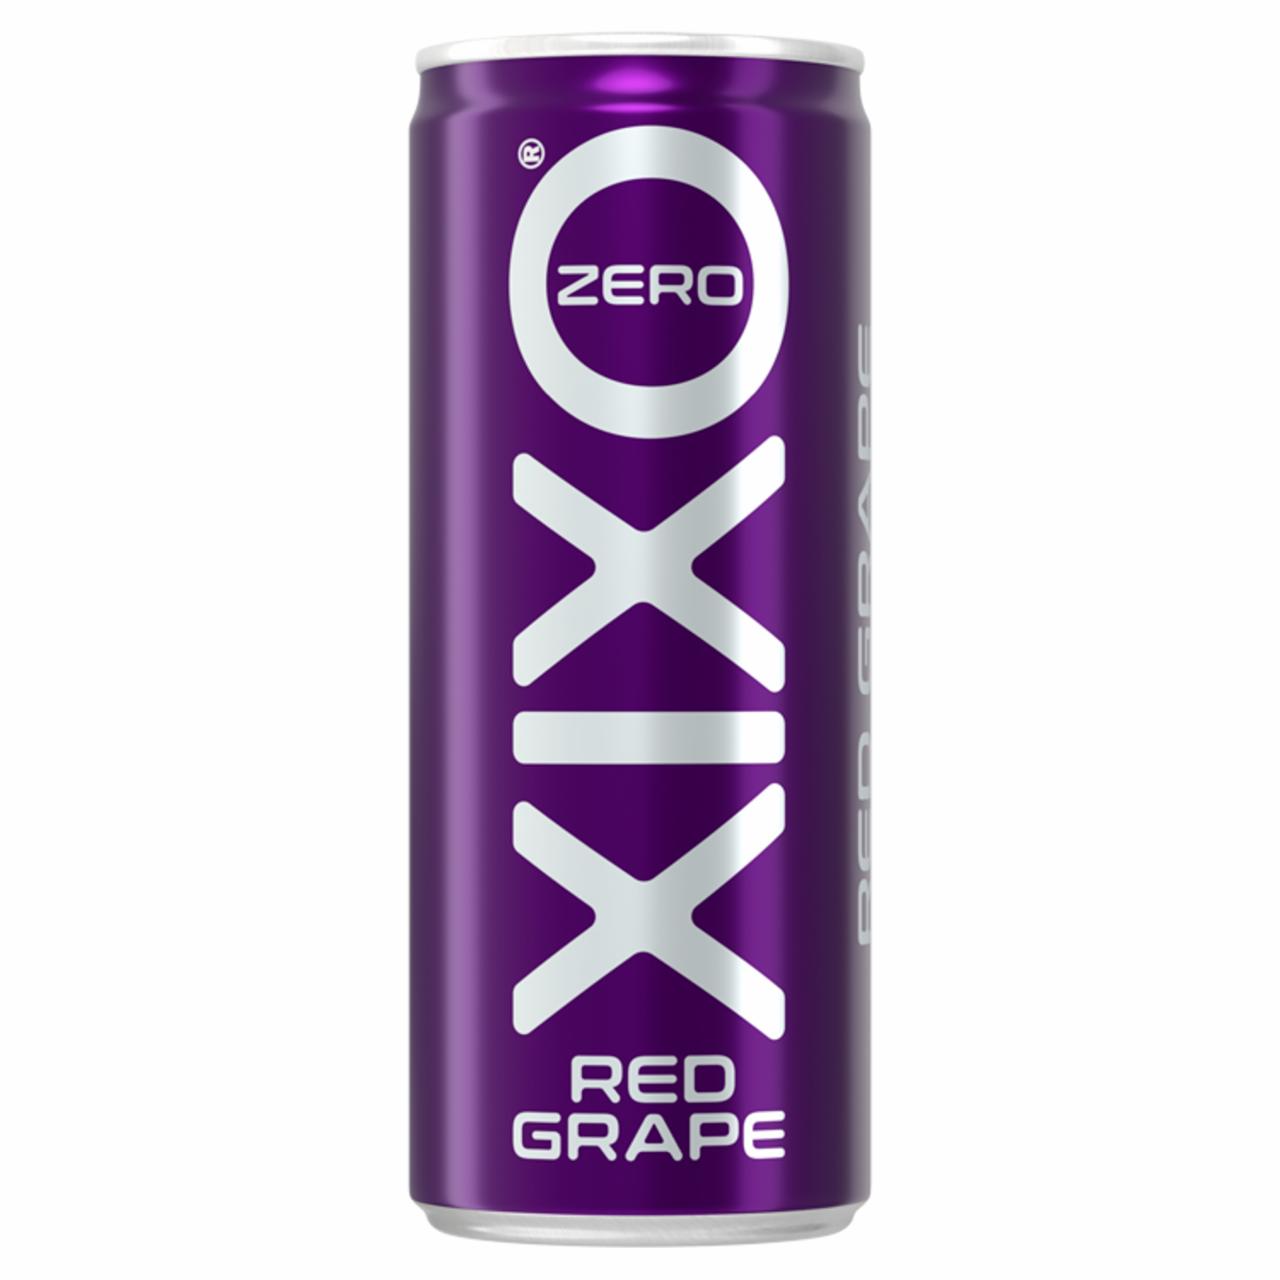 Képek - XIXO Red Grape Zero piros szőlő ízű energia-, cukormentes szénsavas üdítőital édesítőszerrel 250 ml